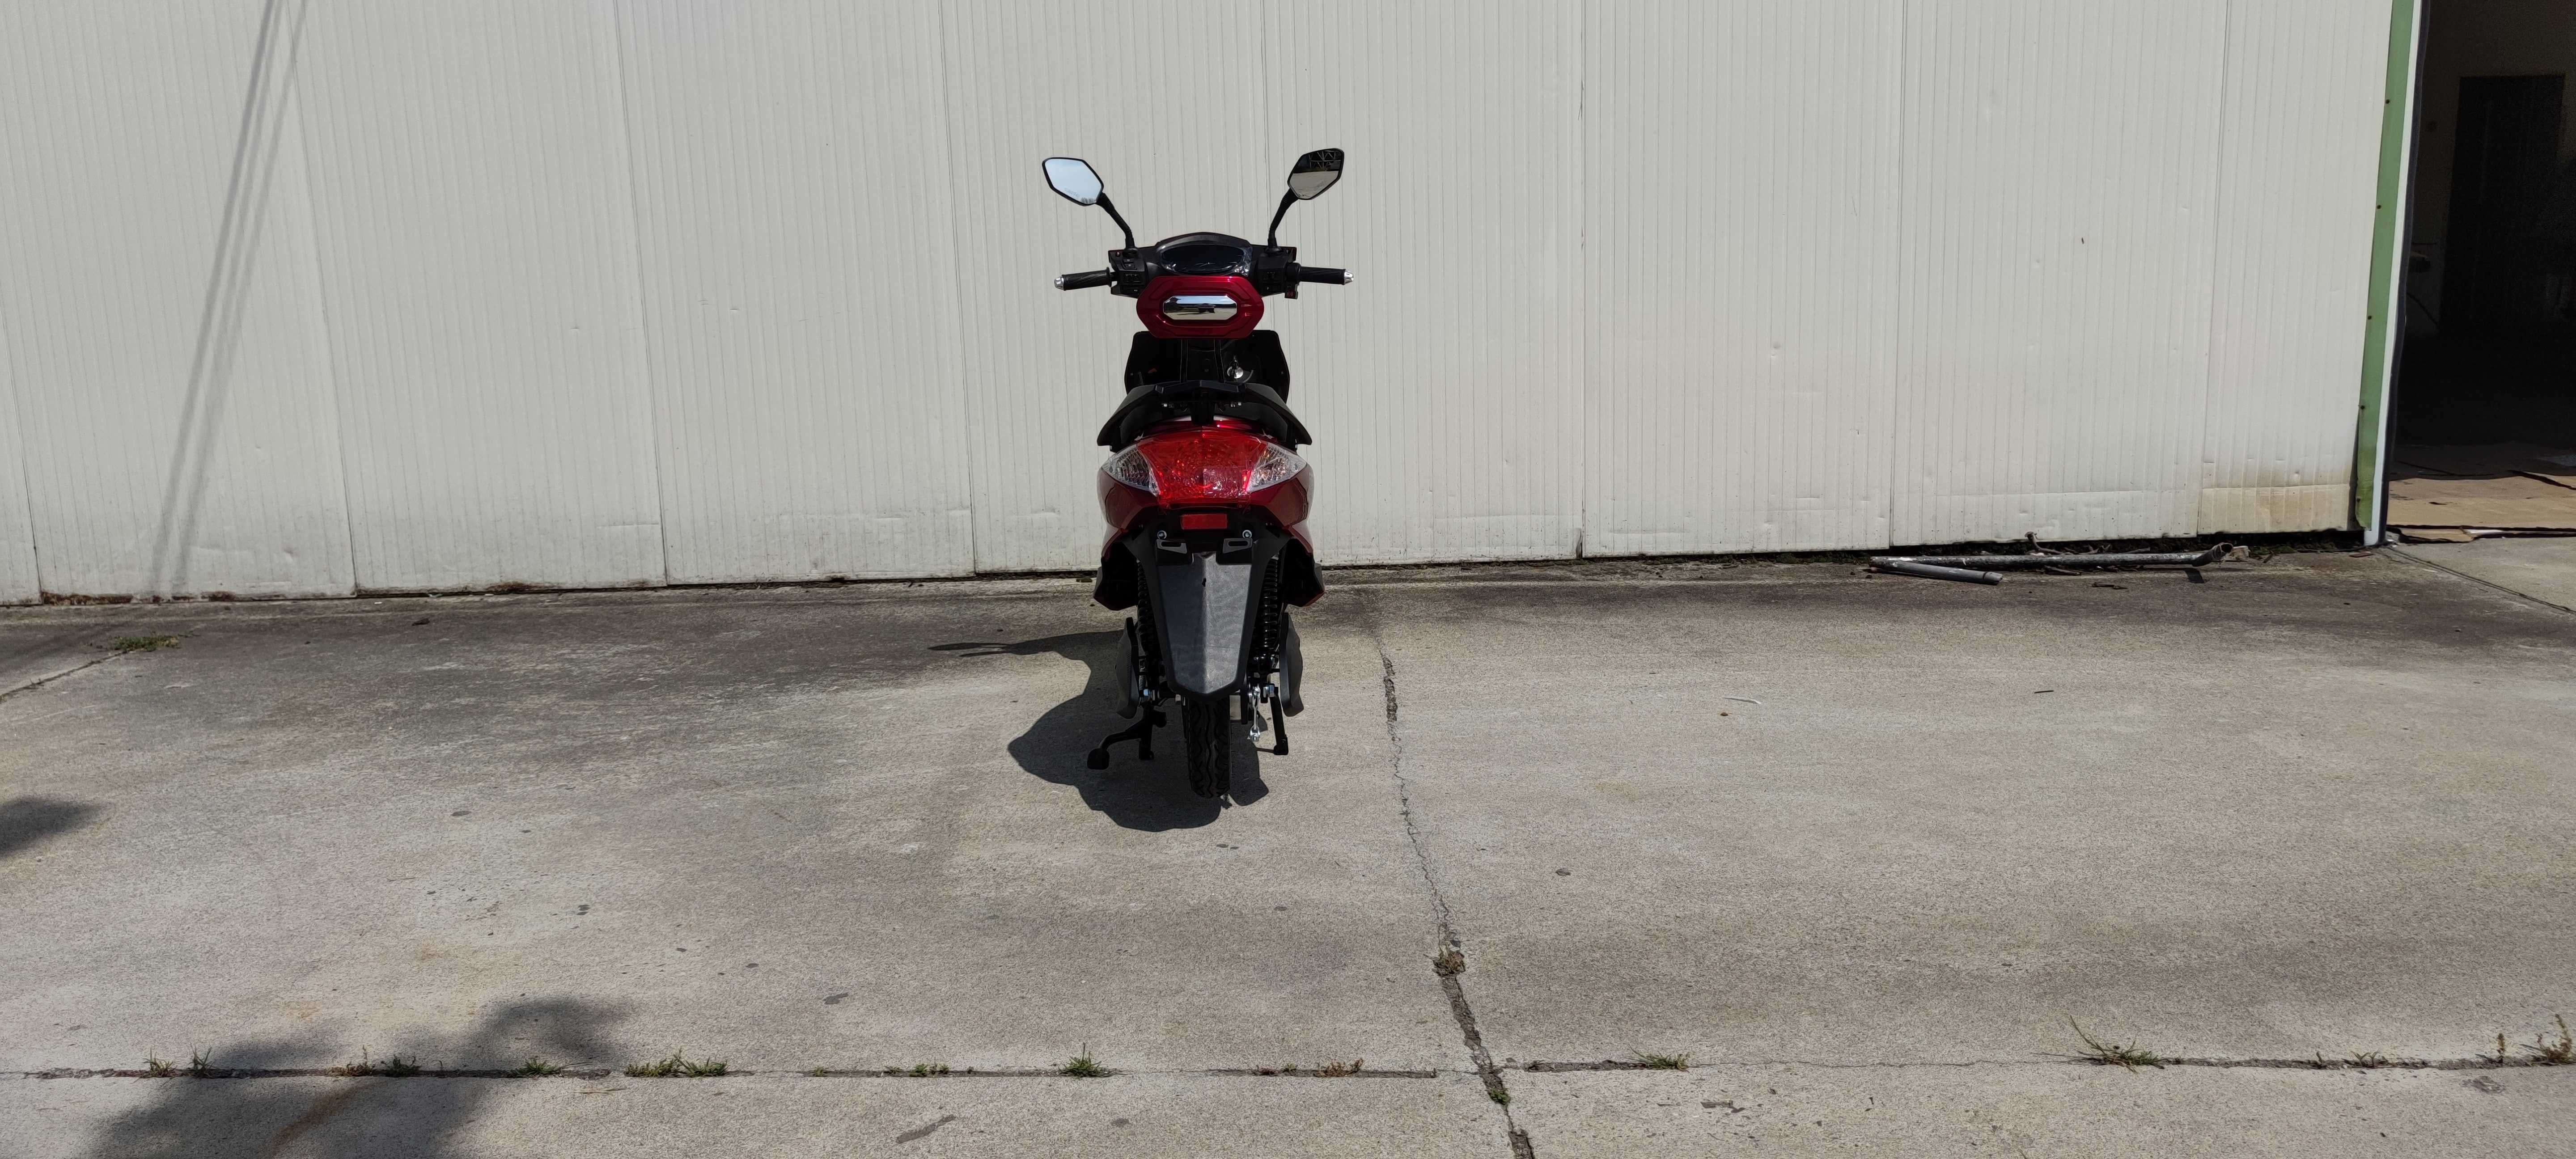 Електрически скутер My Force модел ЕМ006 червен цвят с регистрация